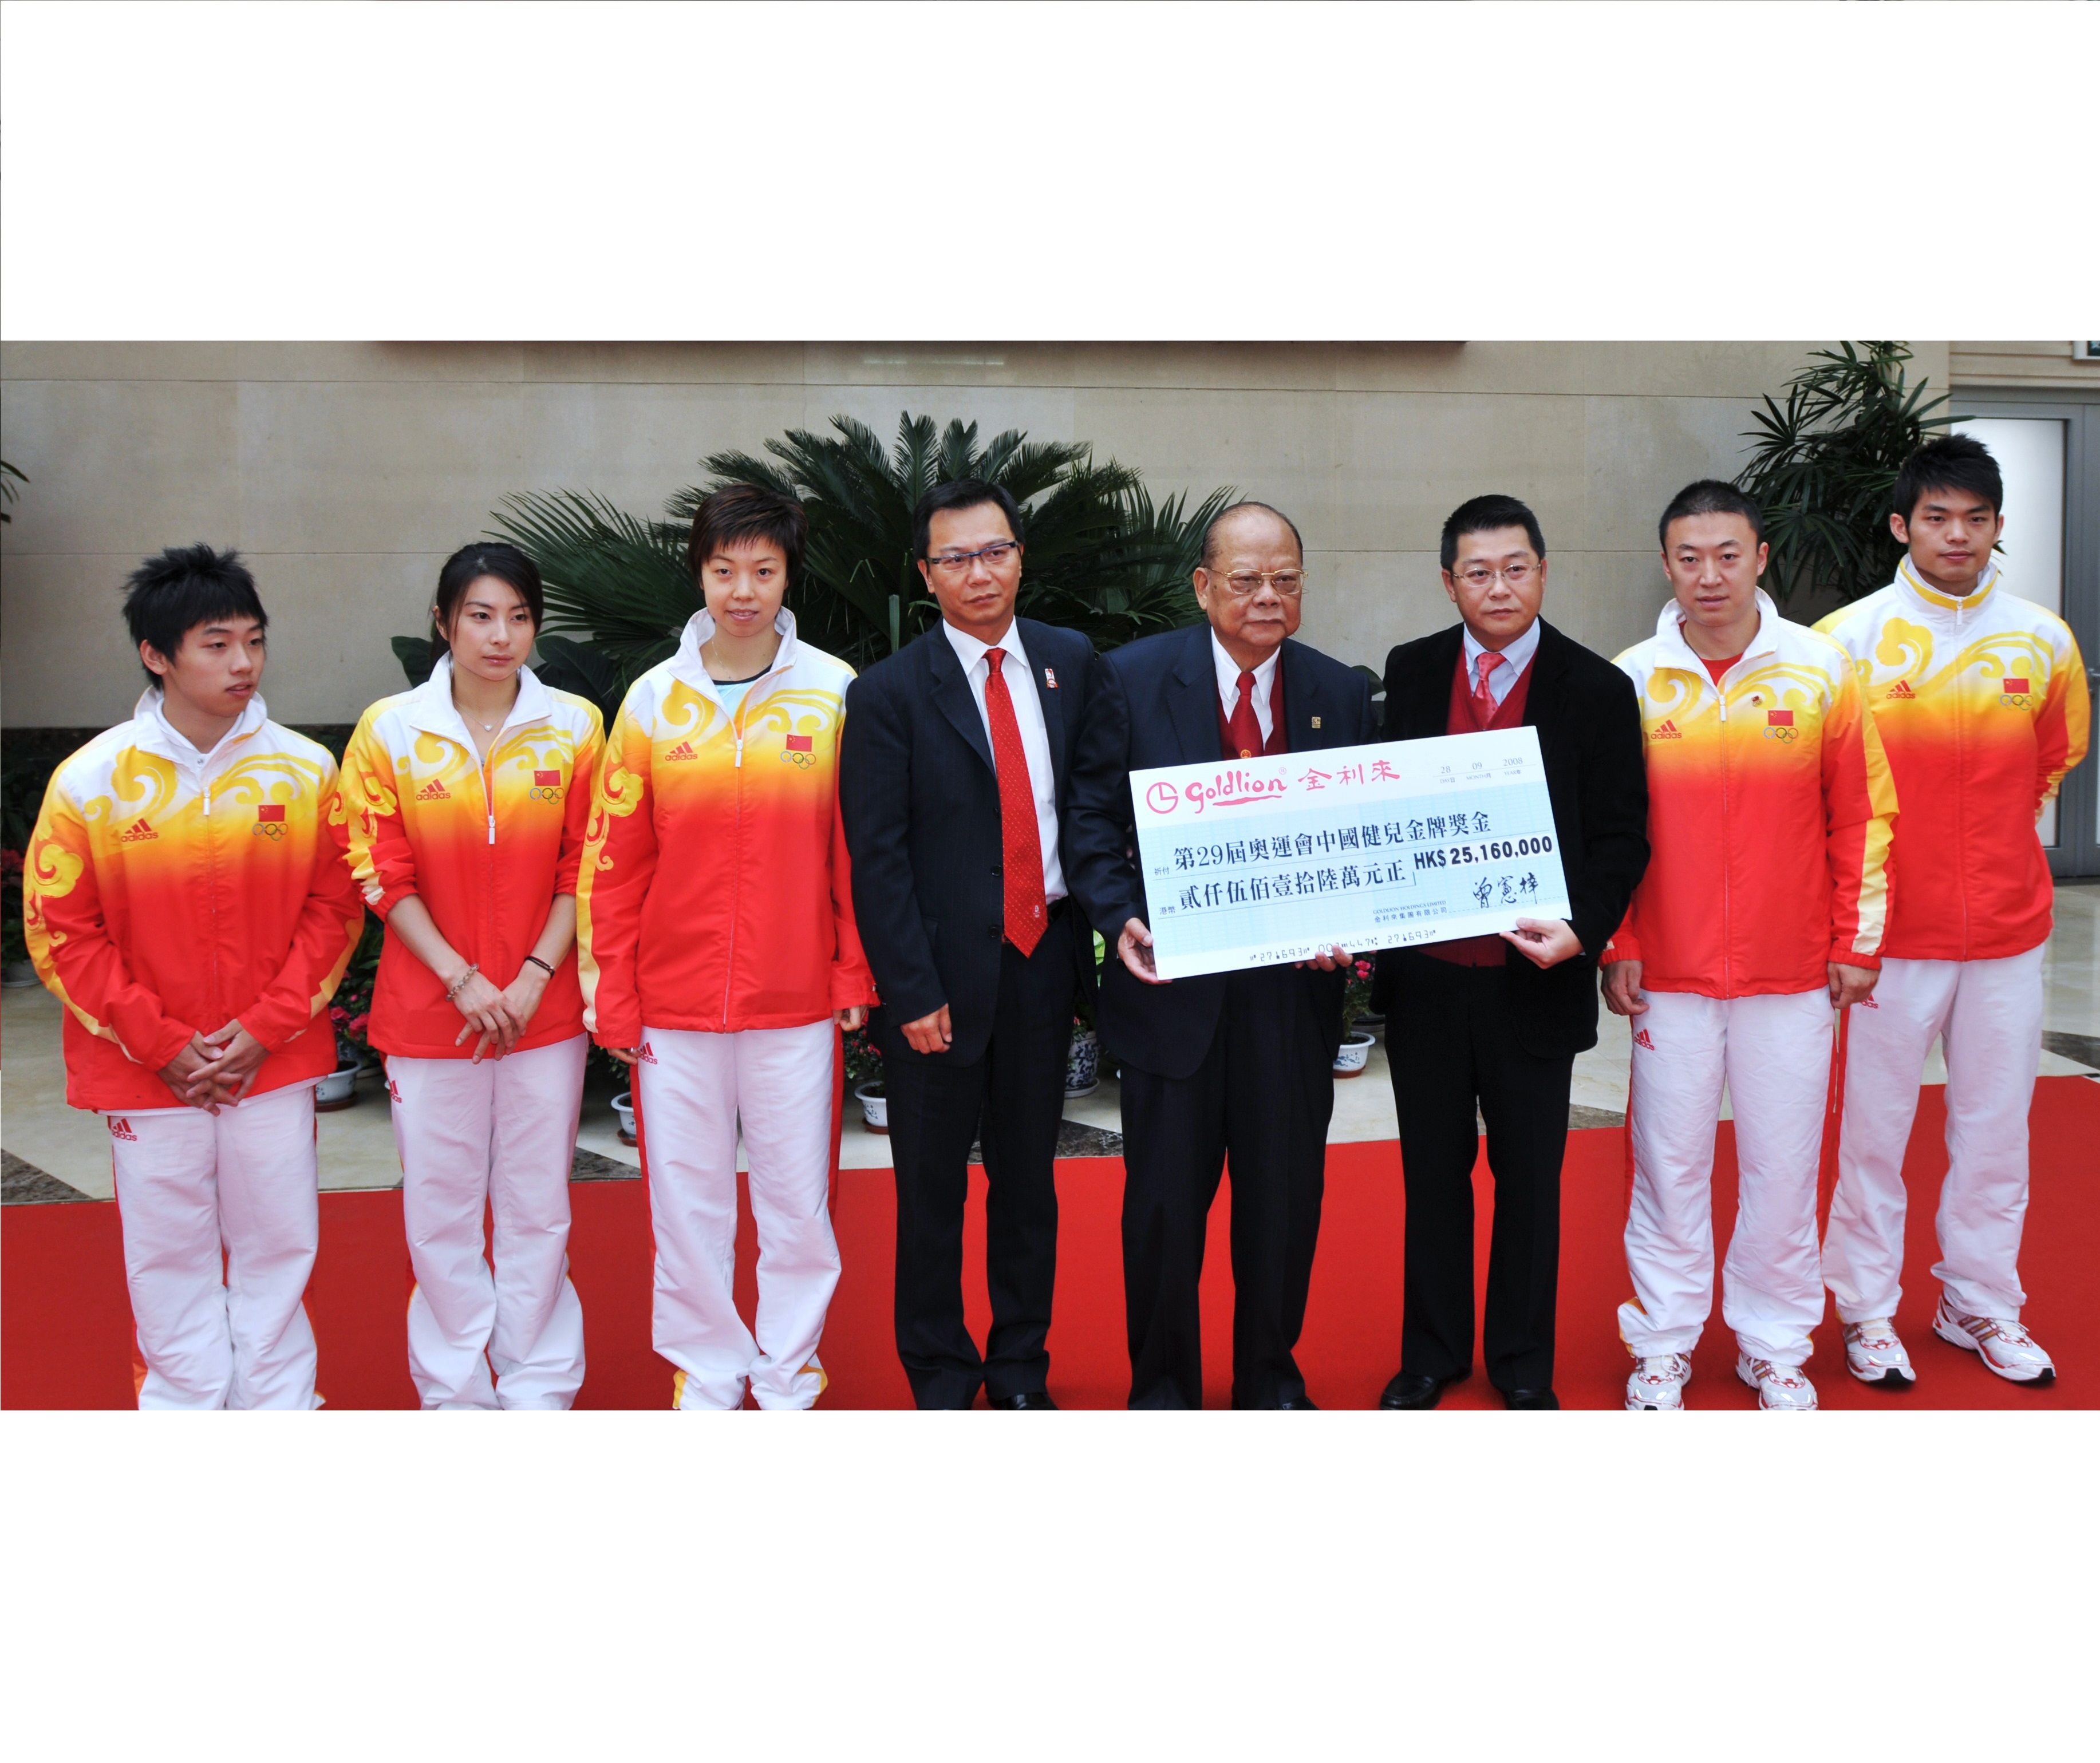 2008年曾宪梓、曾智明（右三）、曾智雄(左四)向北京奥运金牌运动员代表邹凯、郭晶晶、张怡宁、马琳、林丹转交奖金支票